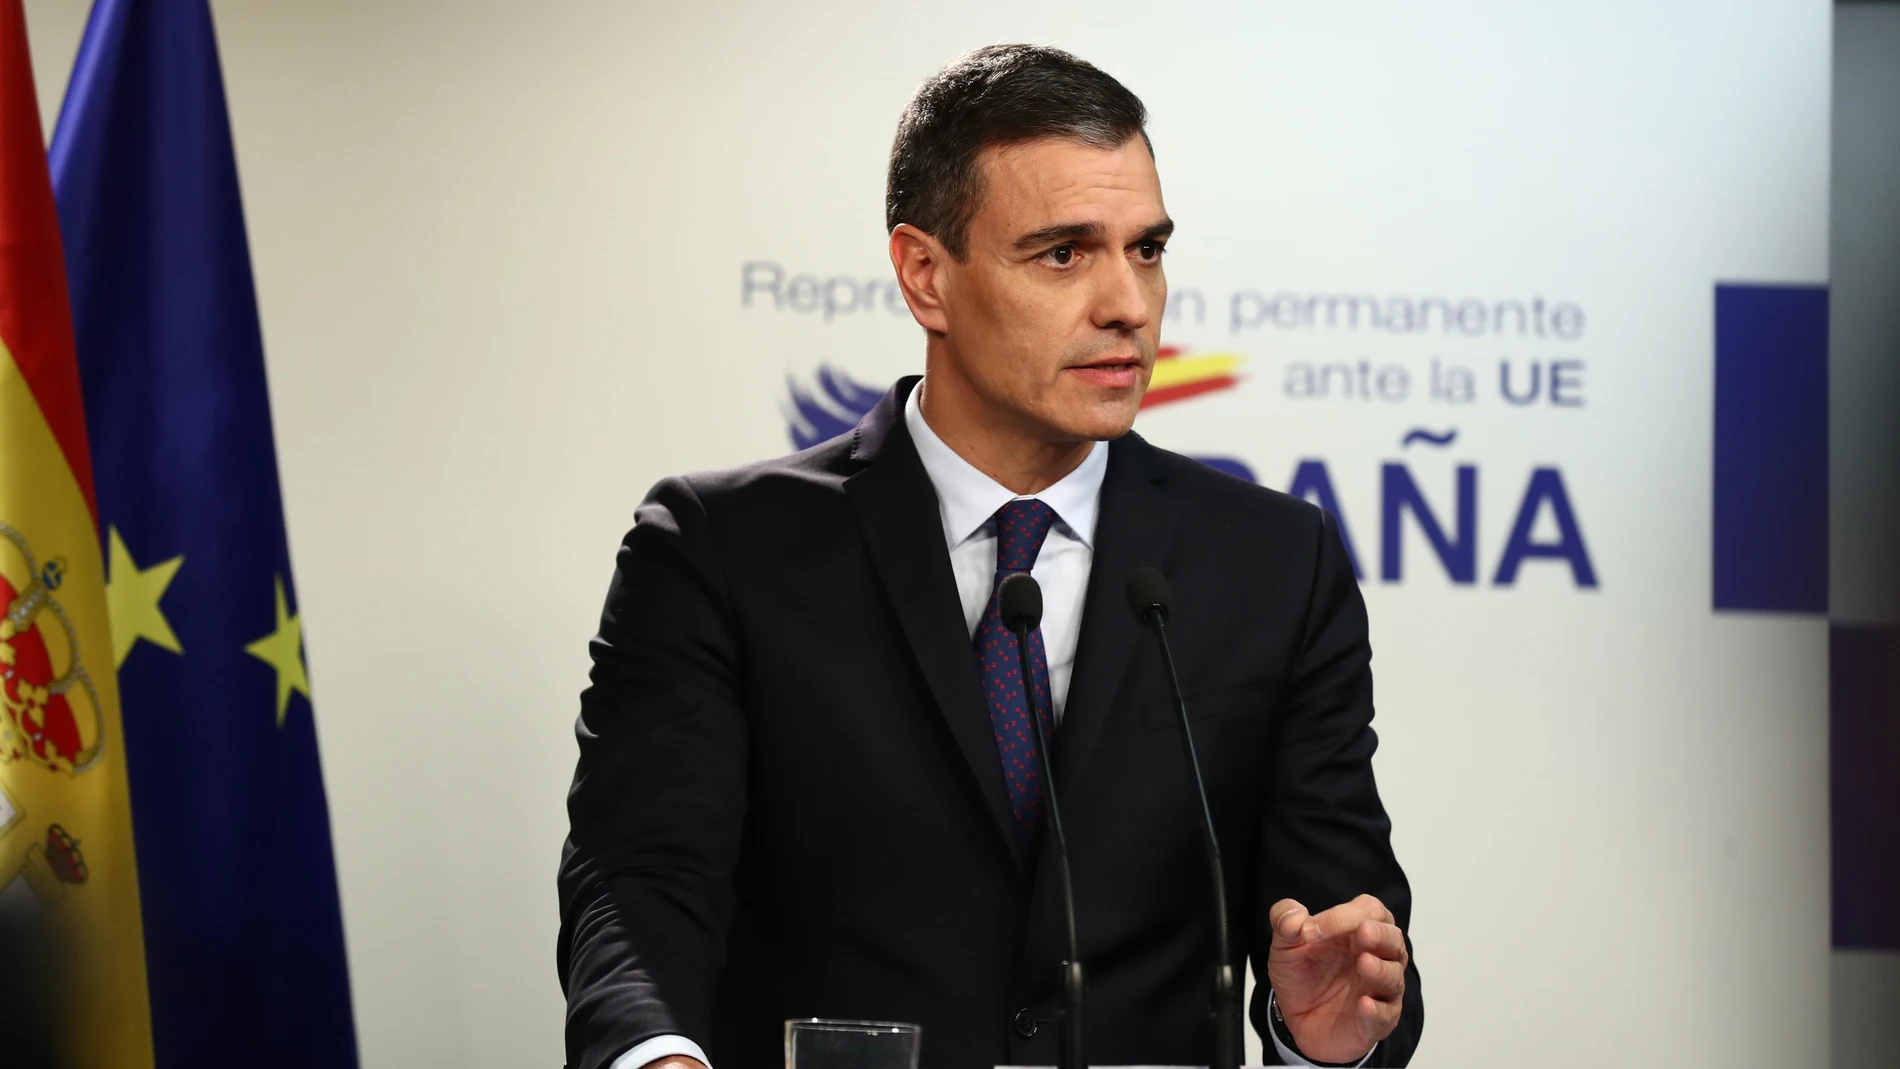 El presidente del Gobierno, Pedro Sánchez, en rueda de prensa en Bruselas